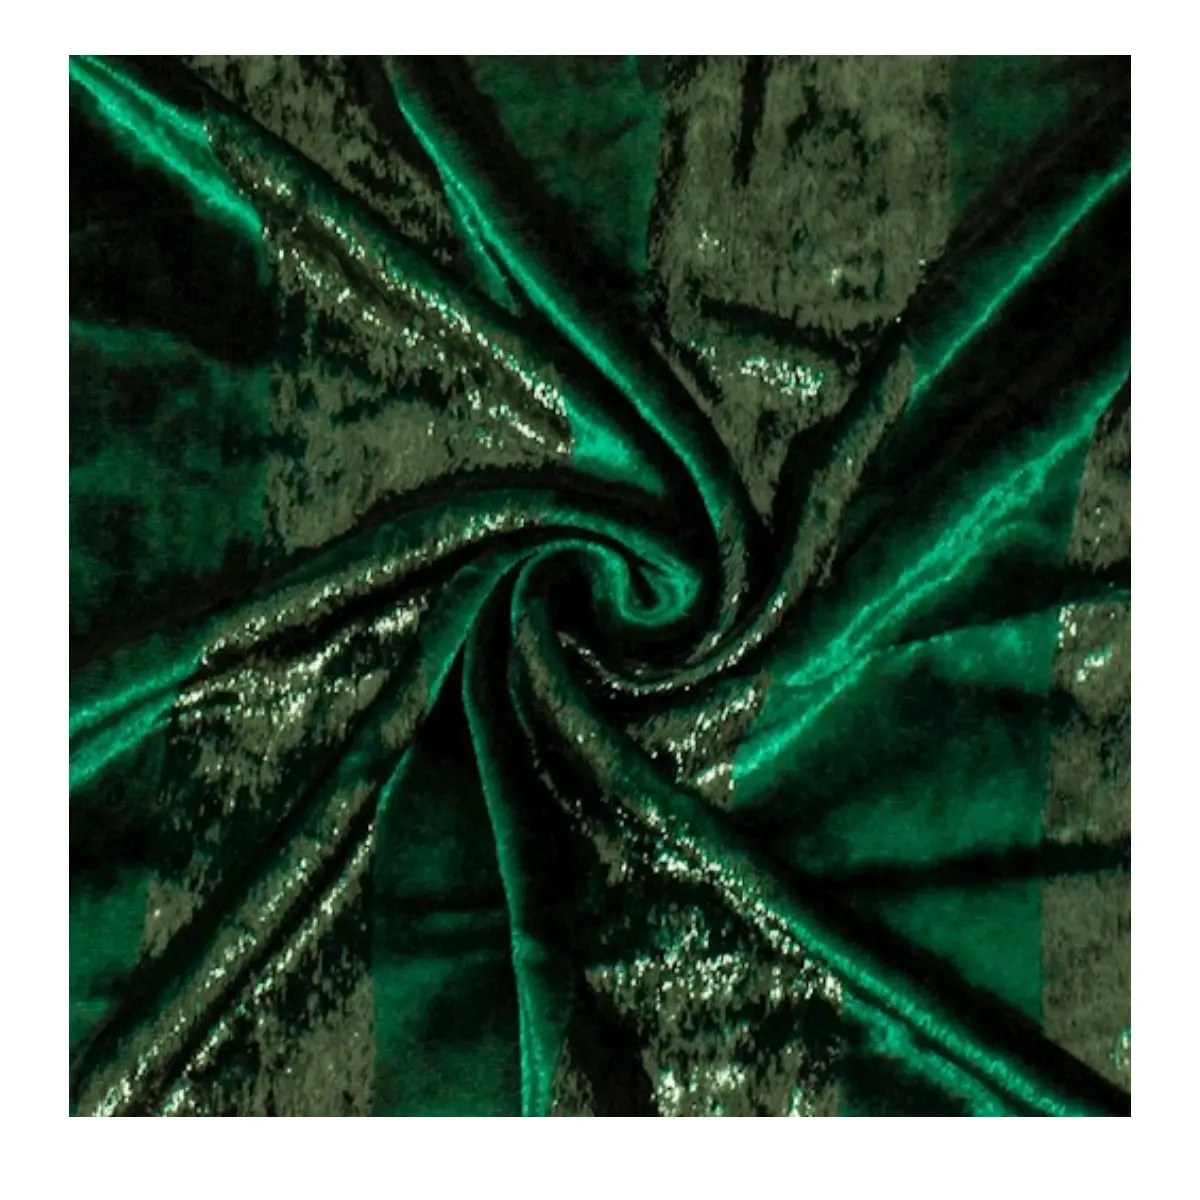 Tissu de velours métallique vert émeraude, tissu boiteux vert, fil de velours transparent brillant pour robe de soirée, paillettes velours